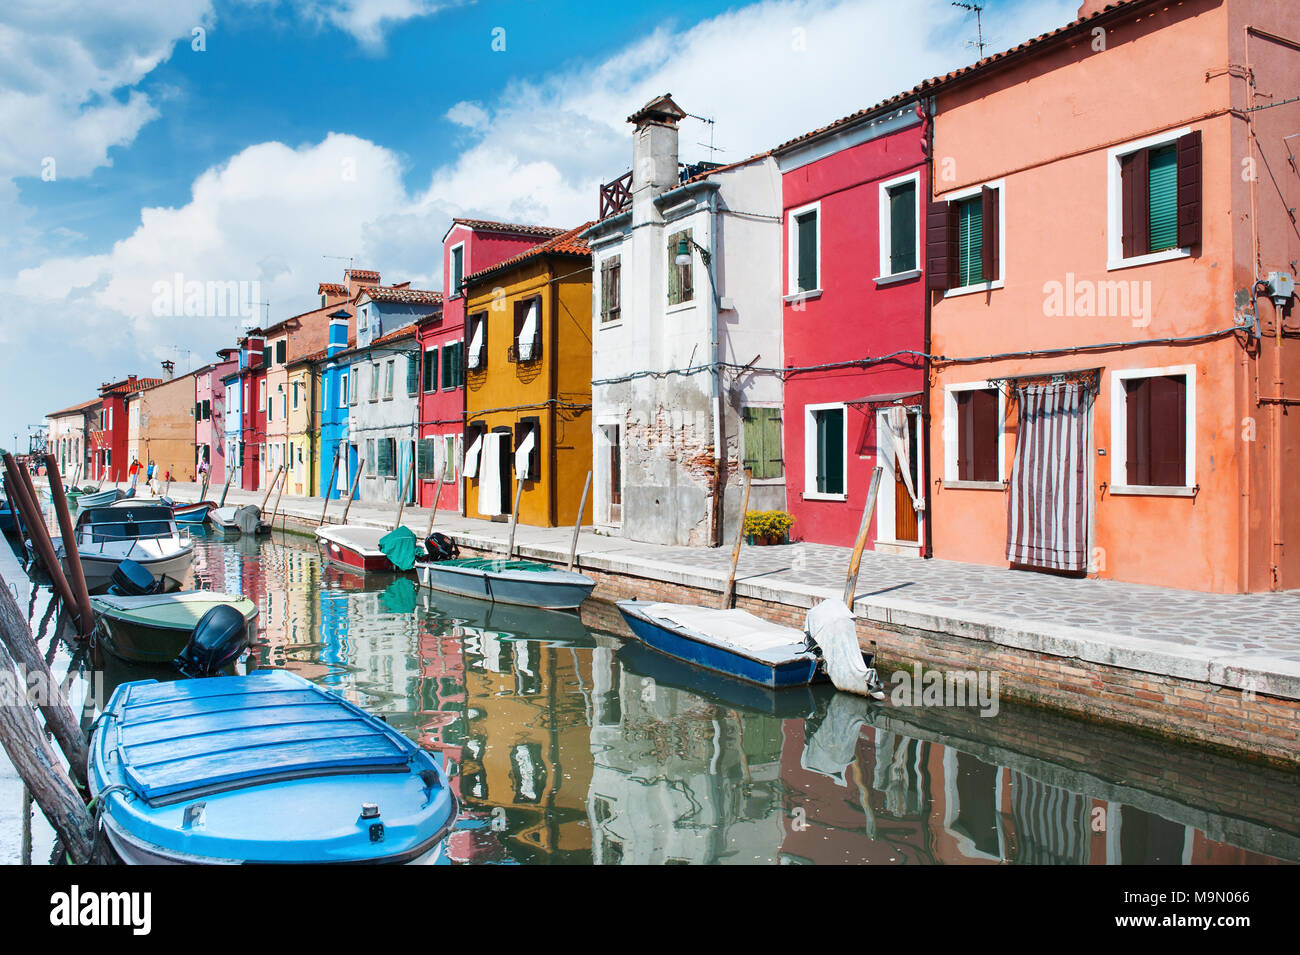 L'île de Burano, Venise, Italie, Europe - canal et maisons colorées belle vue Jour Banque D'Images